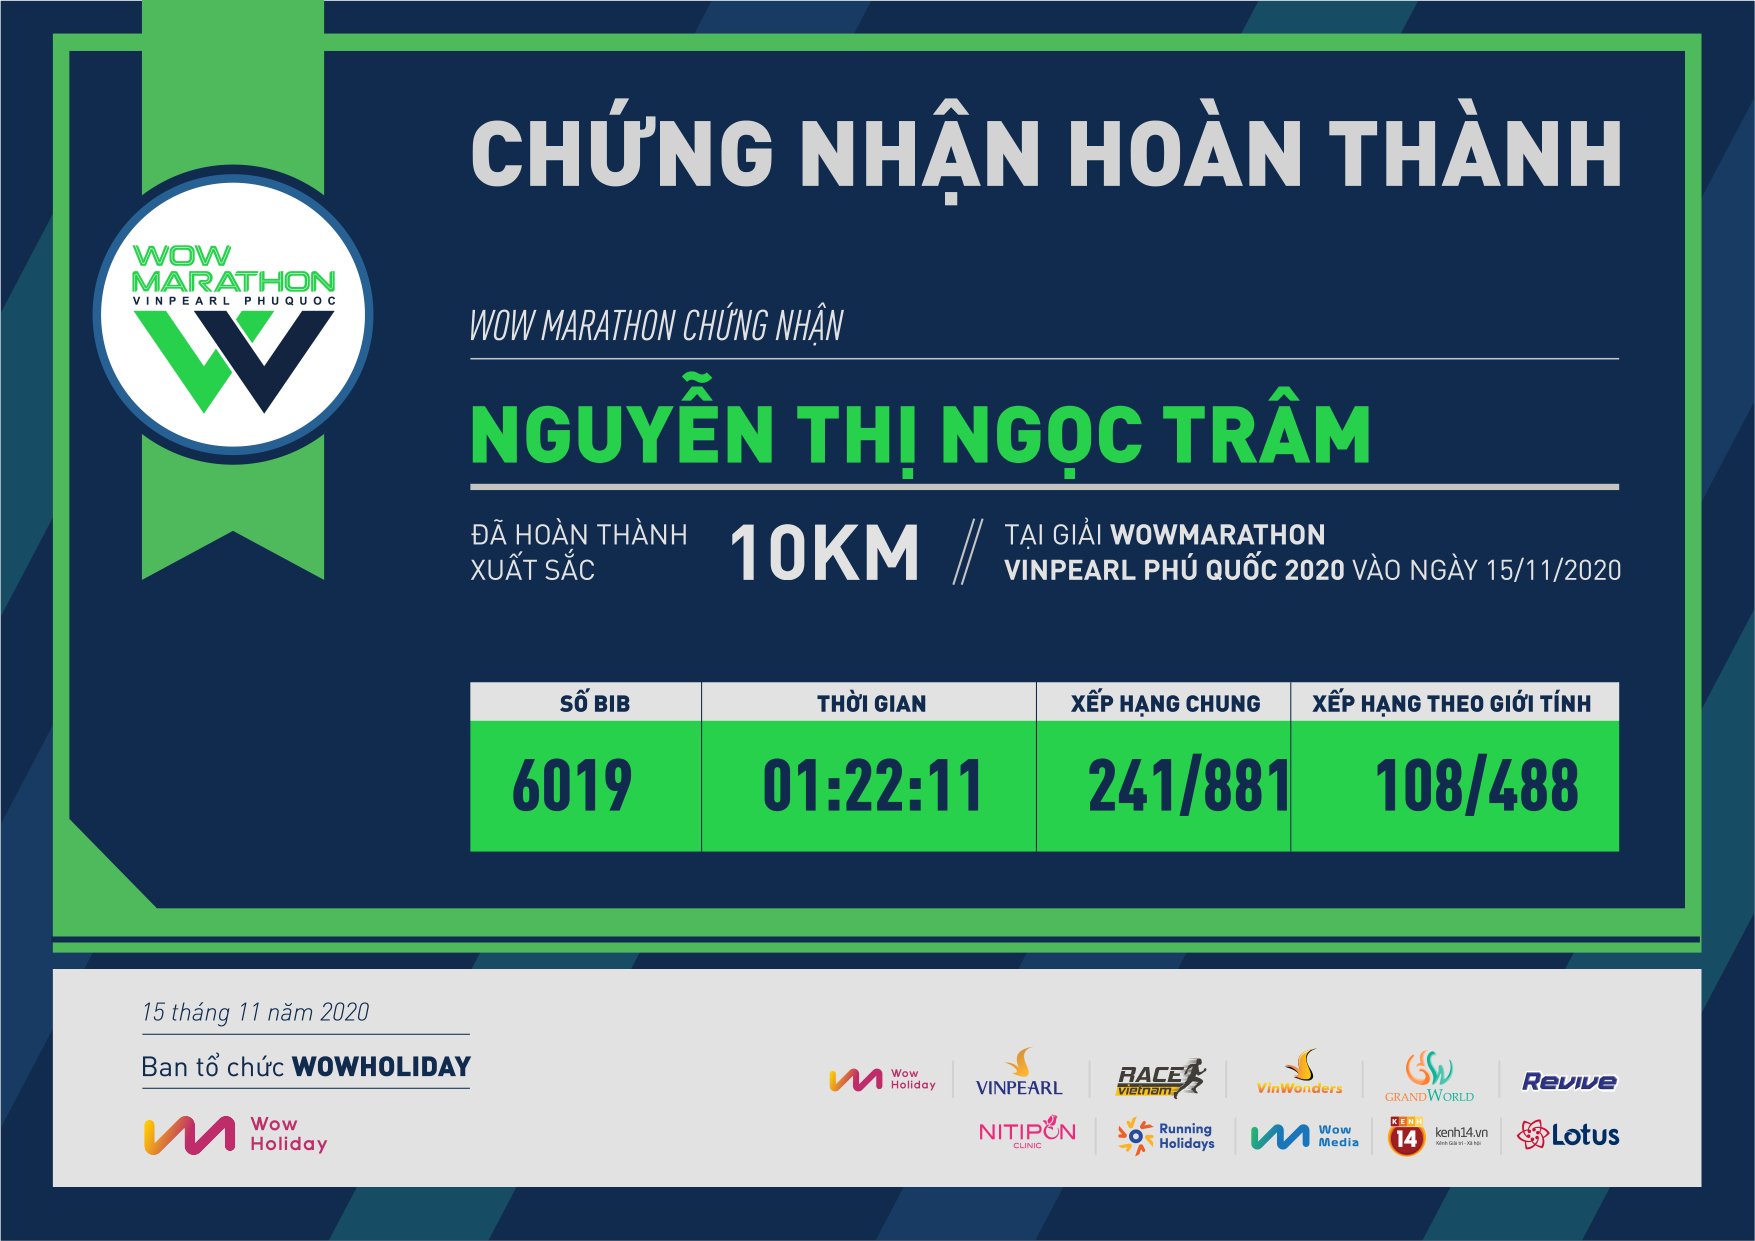 6019 - Nguyễn Thị Ngọc Trâm